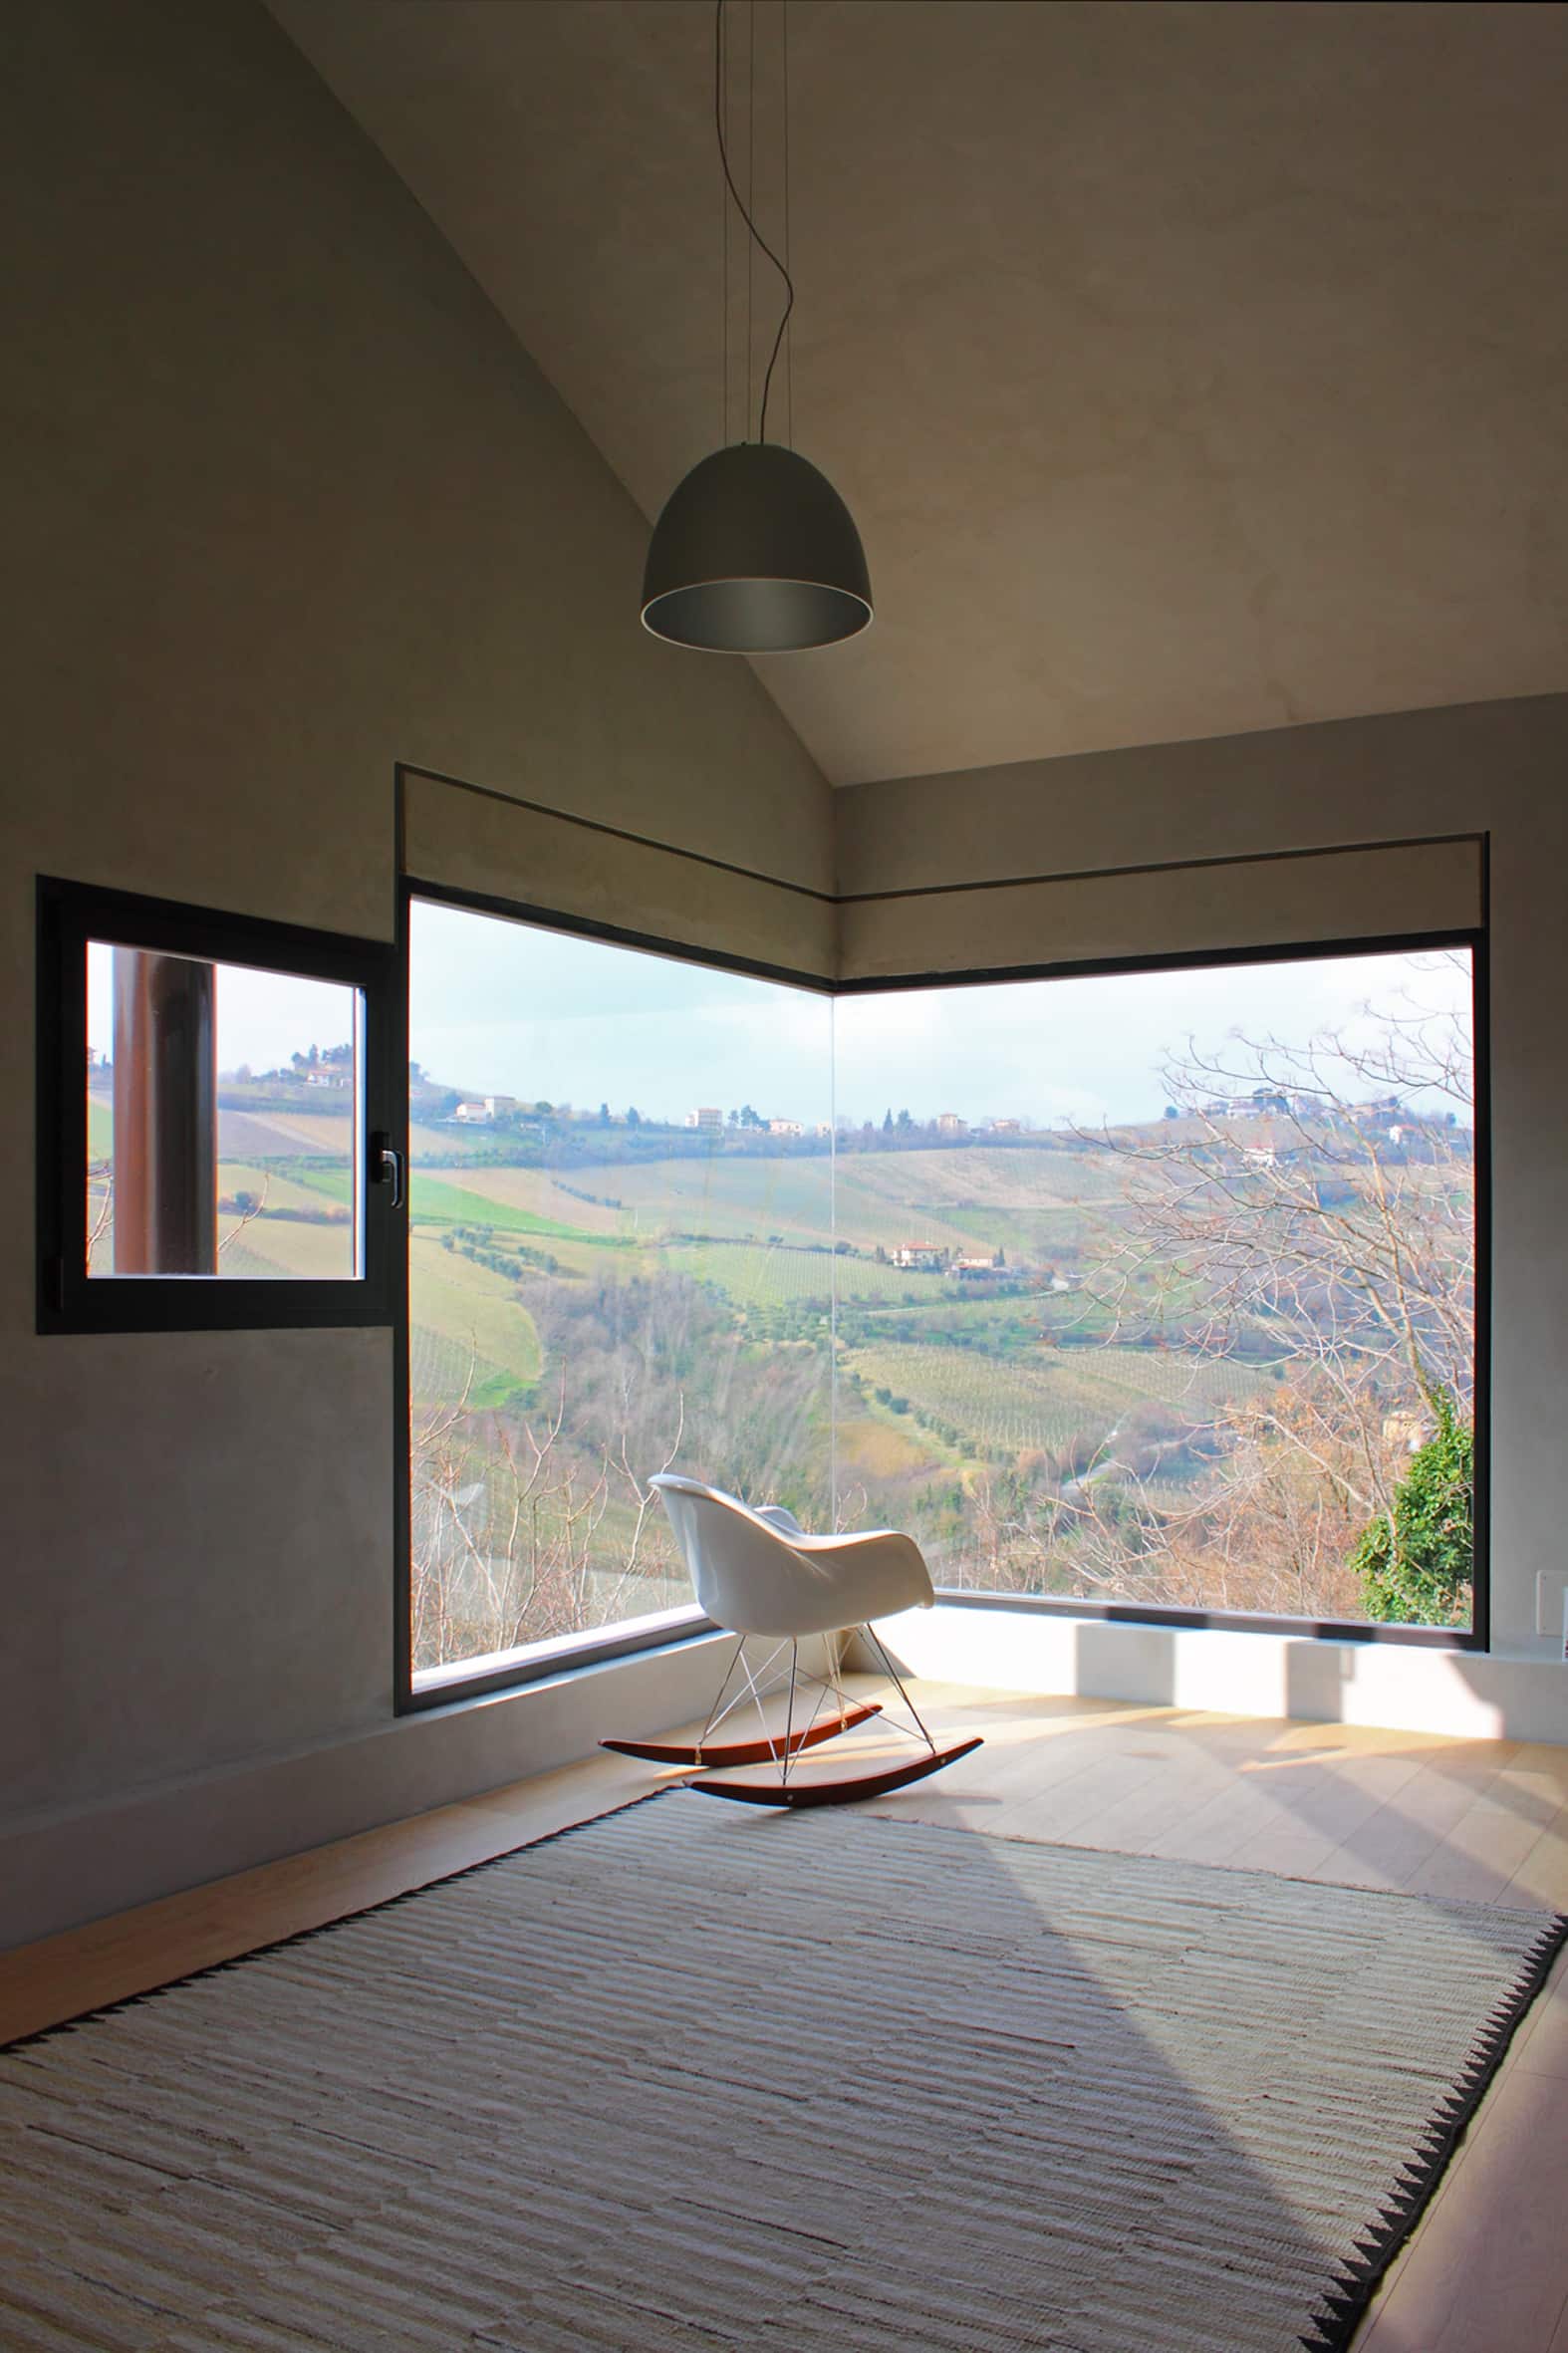 Barilari Architetti - Picture House (3)